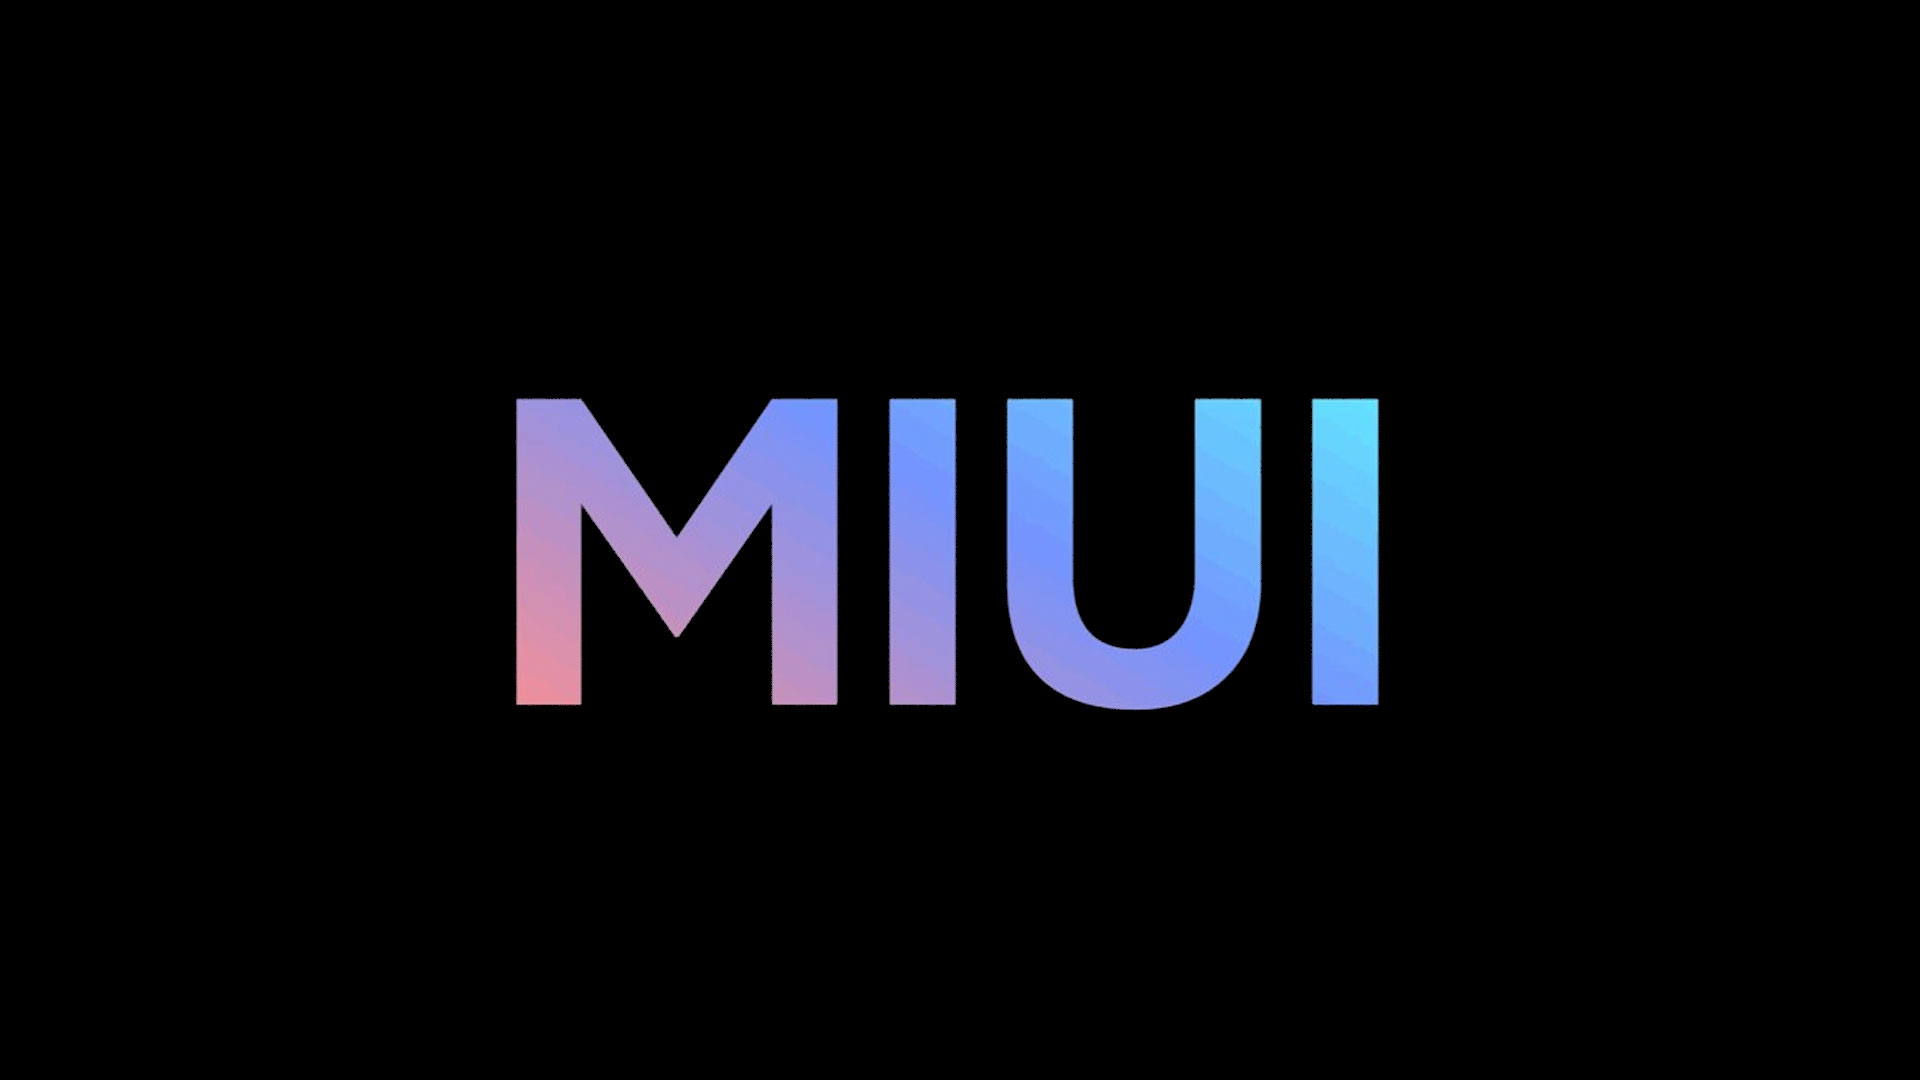 MIUI ha superado los 600 millones de usuarios mensuales, un aumento de 100 millones en año y medio